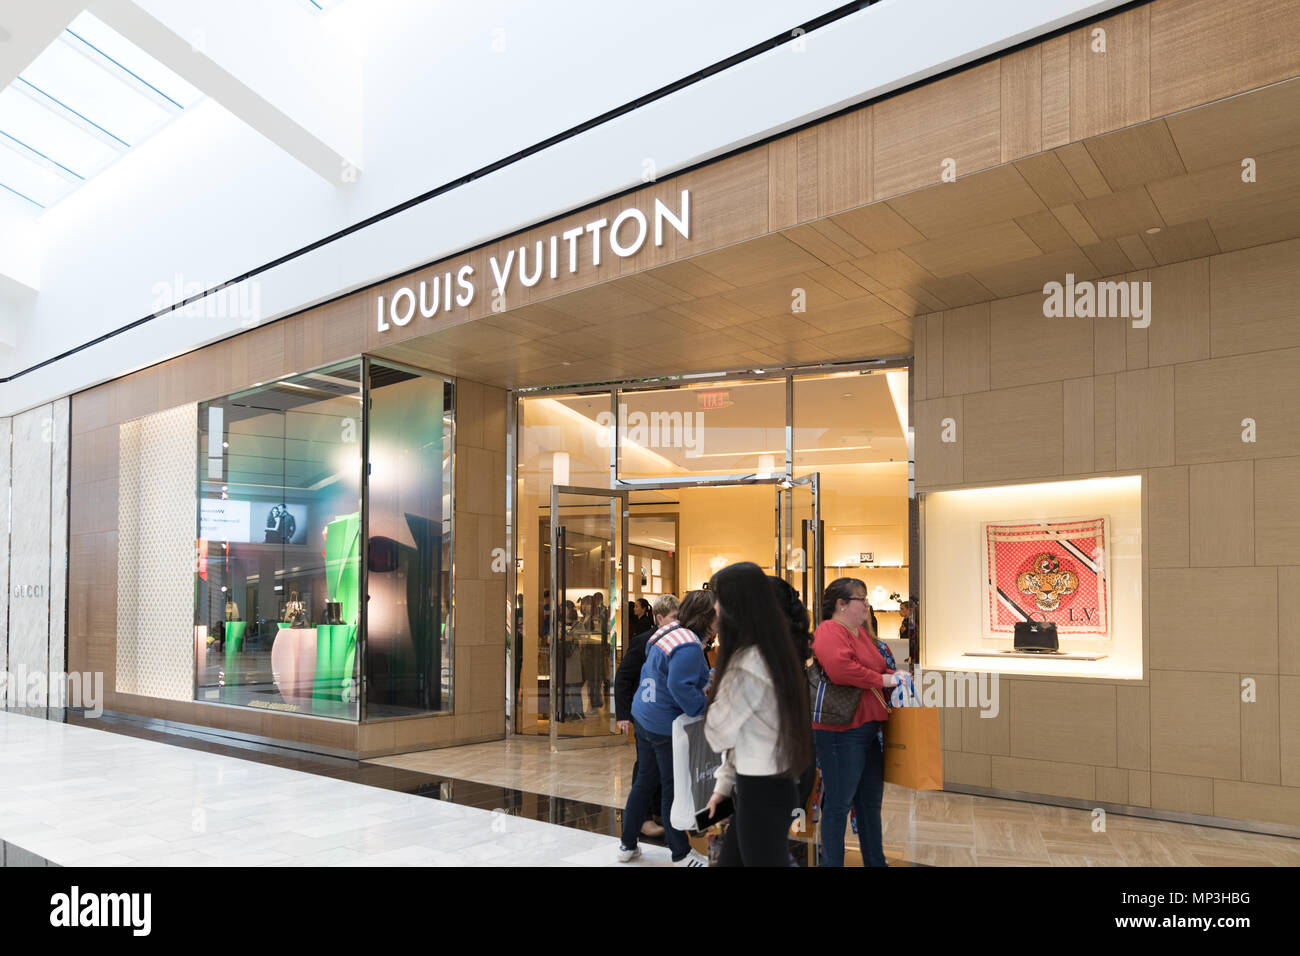 Philadelphie, Pennsylvanie, le 19 mai 2018 : l'intérieur du magasin Louis Vuitton à King of Prussia Mall. Louis Vuitton est une maison de mode et de luxe société de vente au détail Banque D'Images